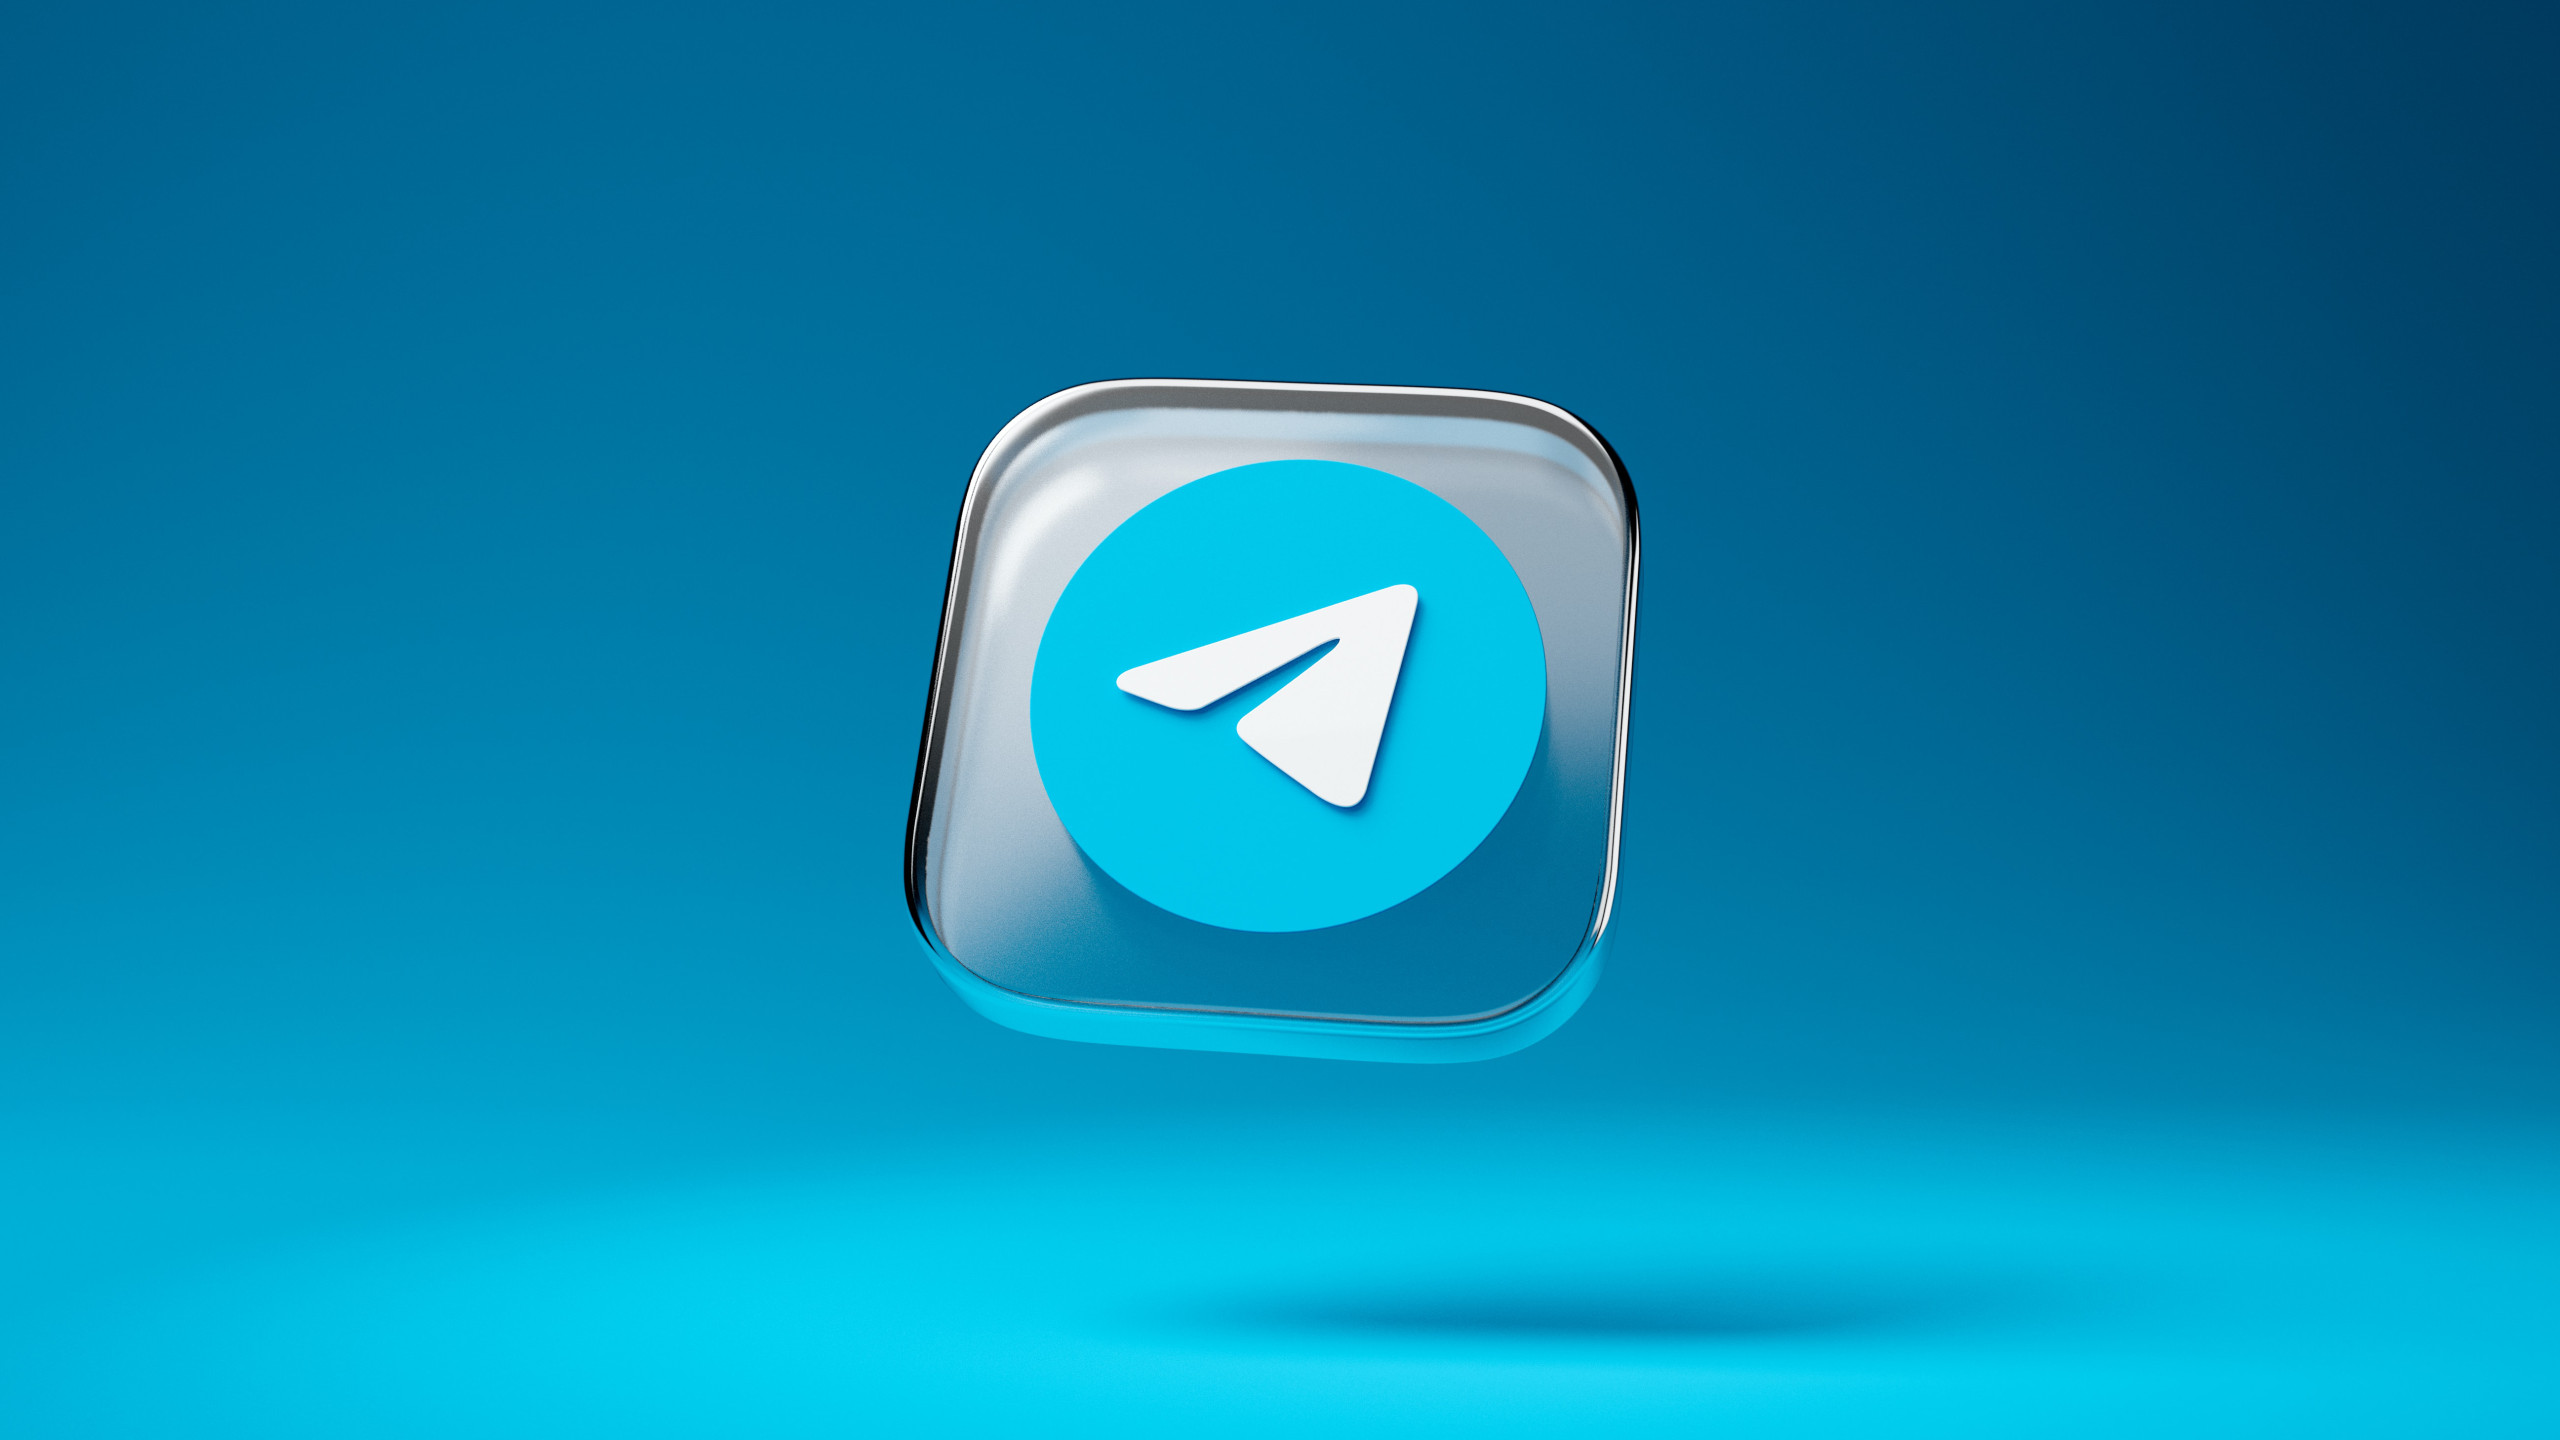 CEO tá irritado: Telegram lança novos recursos e de novo Apple atrasa atualização do aplicativo; entenda